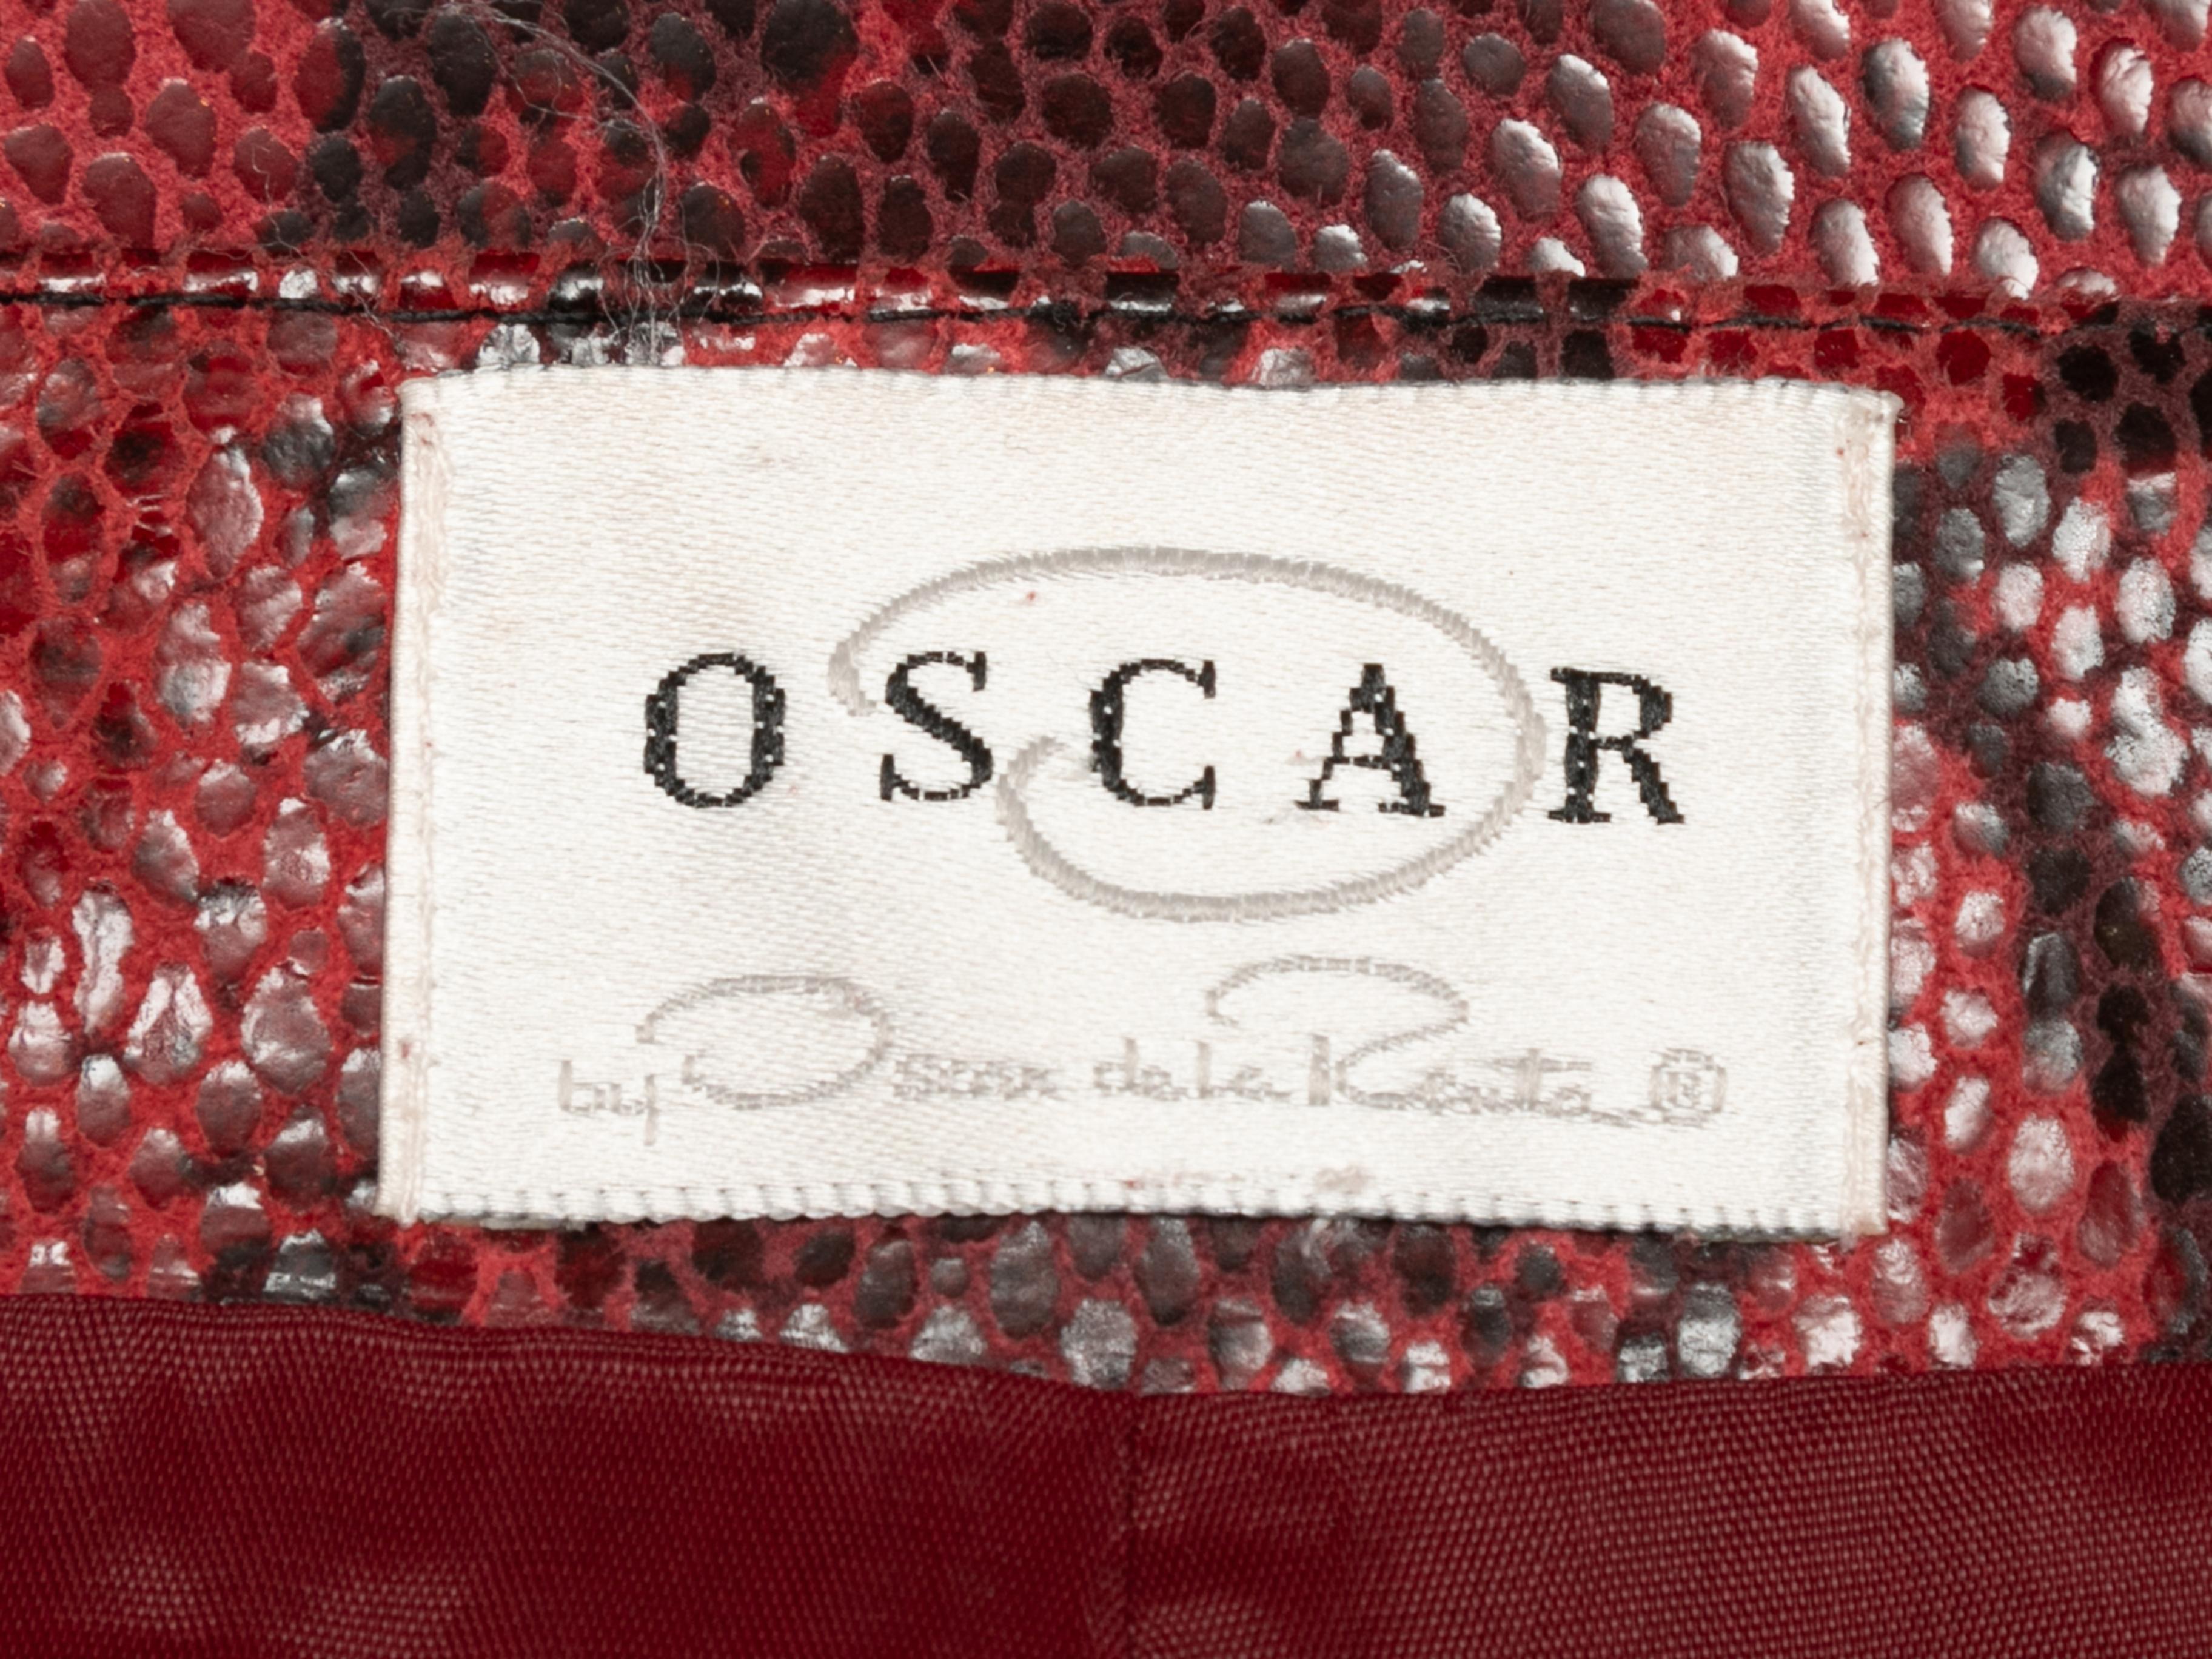 Roter und schwarzer Rock aus Schlangenlederimitat von Oscar de la Renta. Reißverschluss am Rücken. 32